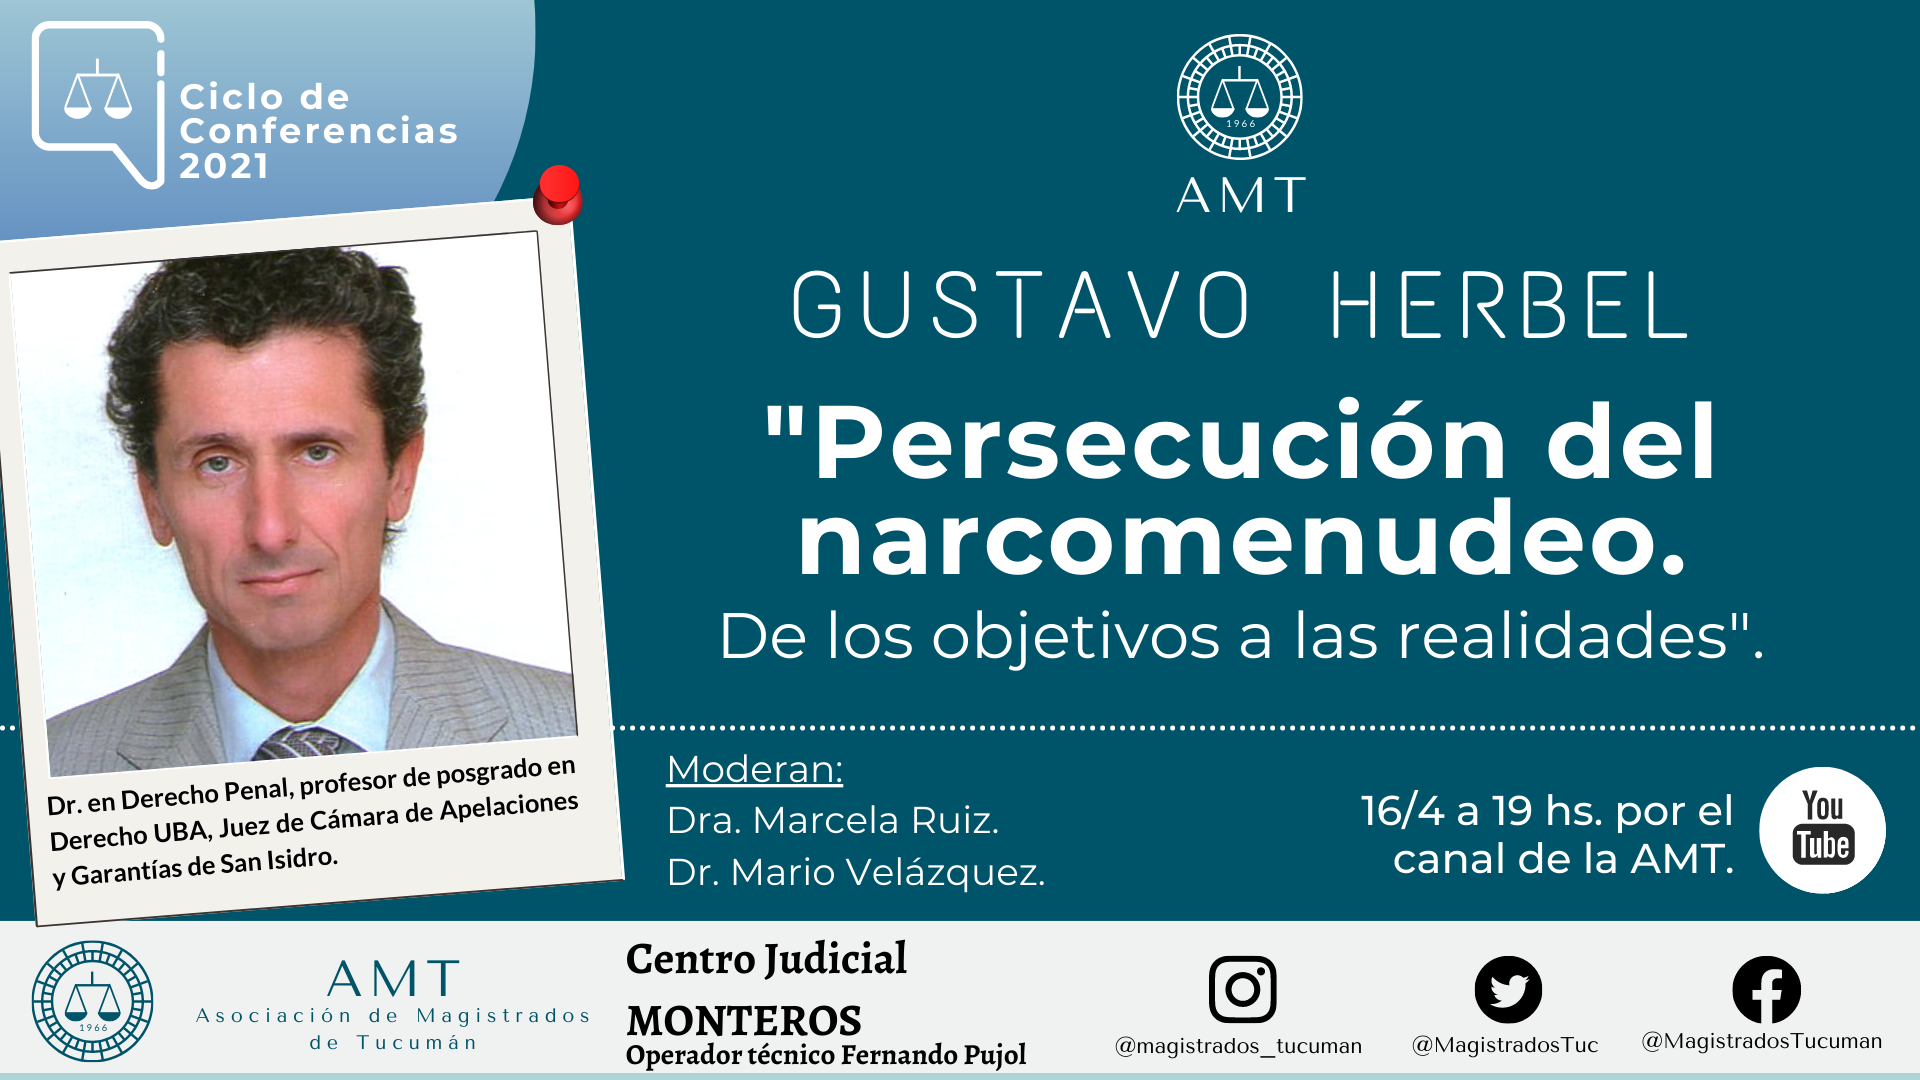 Vuelva a ver la conferencia de Gustavo Herbel «Persecución del narcomenudeo»